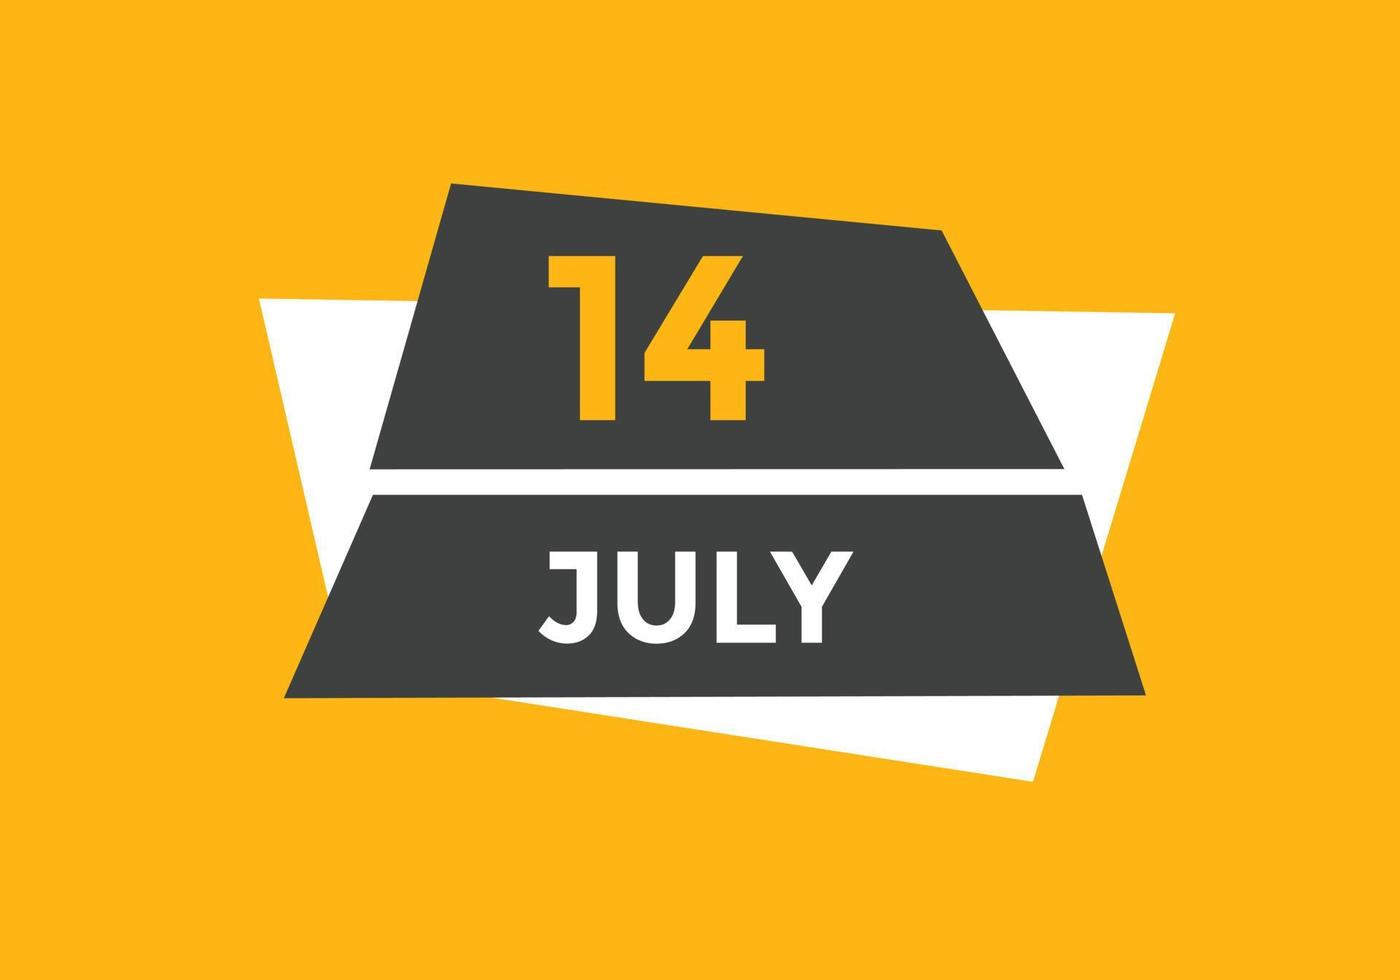 luglio 14 calendario promemoria. 14 luglio quotidiano calendario icona modello. calendario 14 luglio icona design modello. vettore illustrazione